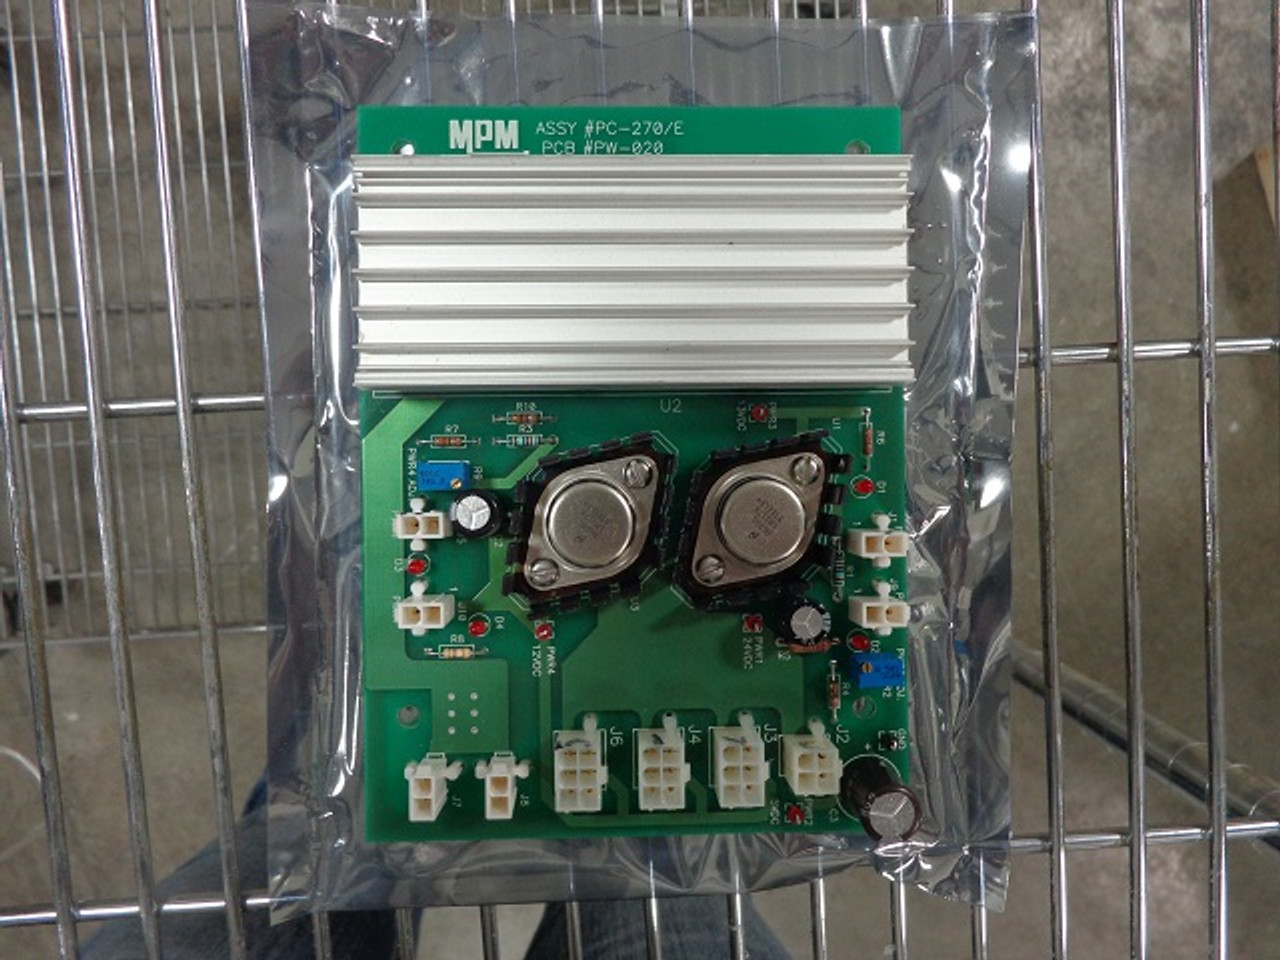 MPM PC-270-E Circuit Card PCB# PW-020